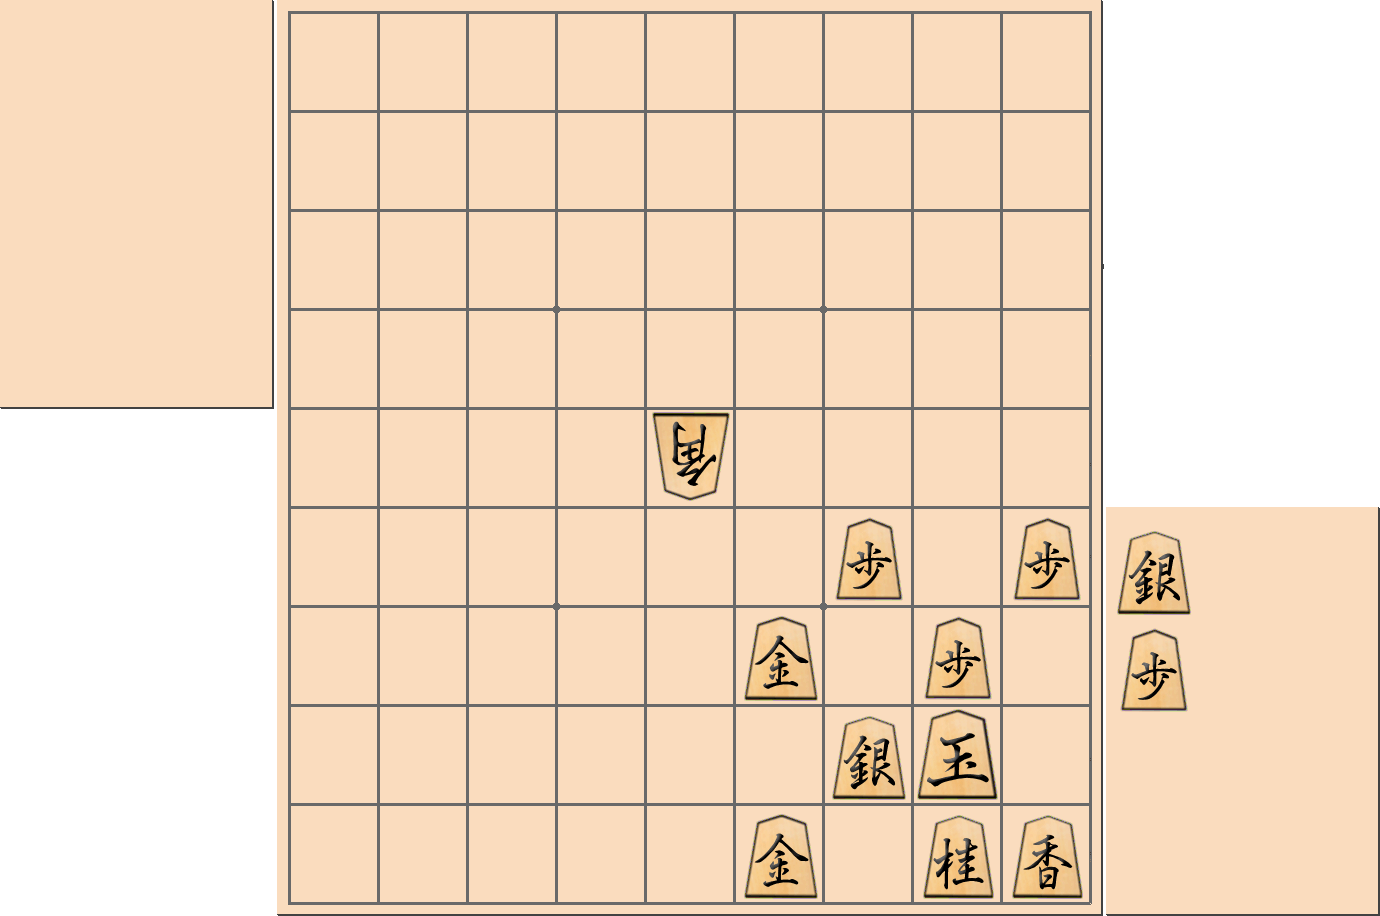 【将棋用語】将棋で「弾く」ことができる部分図